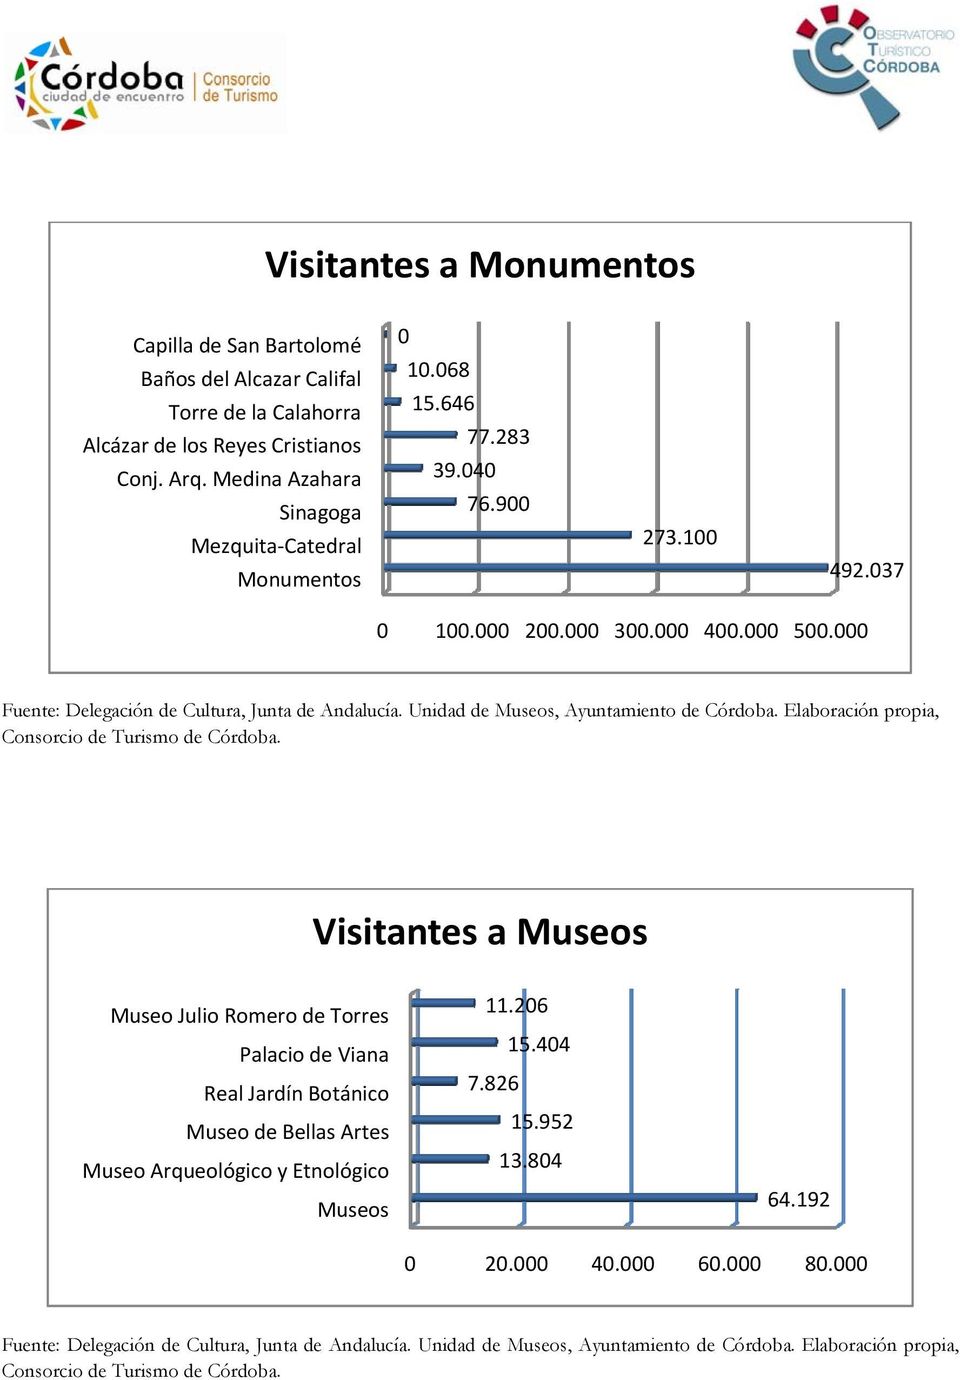 Unidad de Museos, Ayuntamiento de Córdoba. Elaboración propia, Consorcio de Turismo de Córdoba.